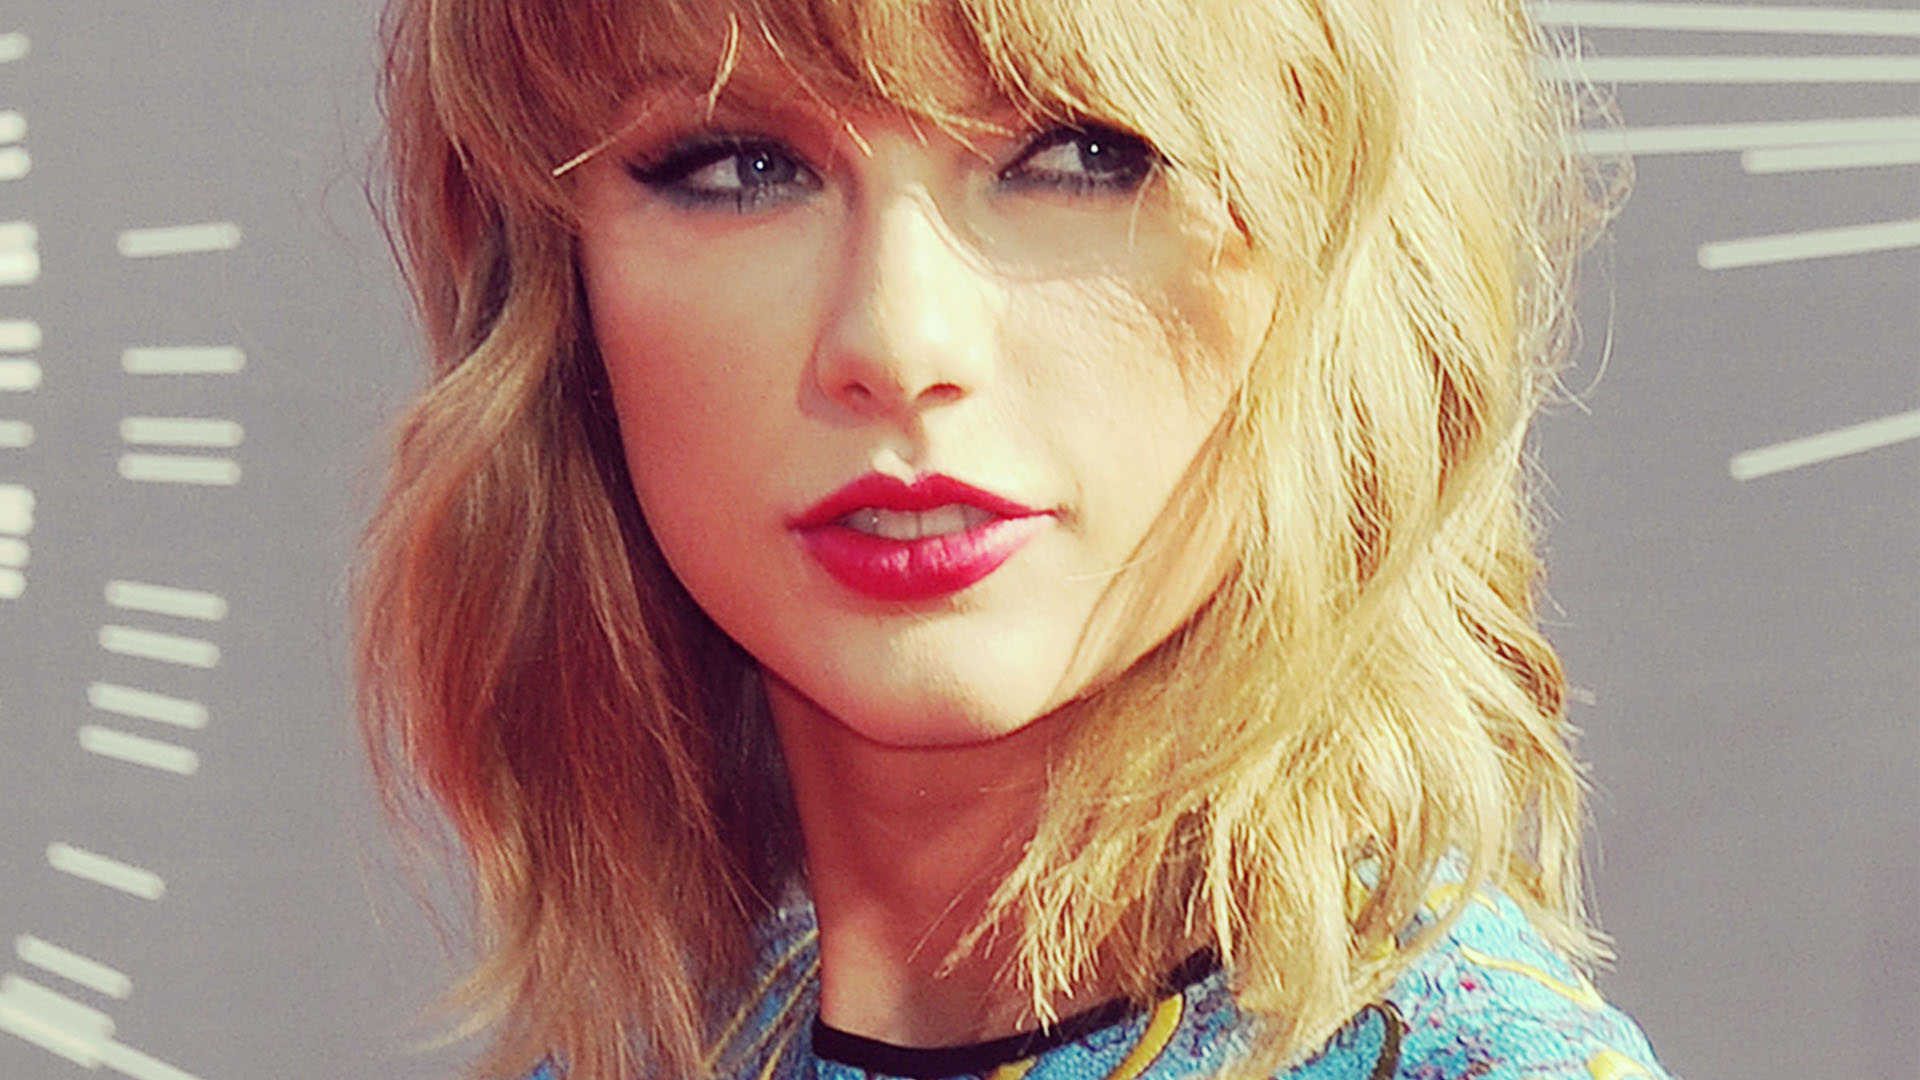 Taylor Swift HD Wallpaper At Wallpaperbro